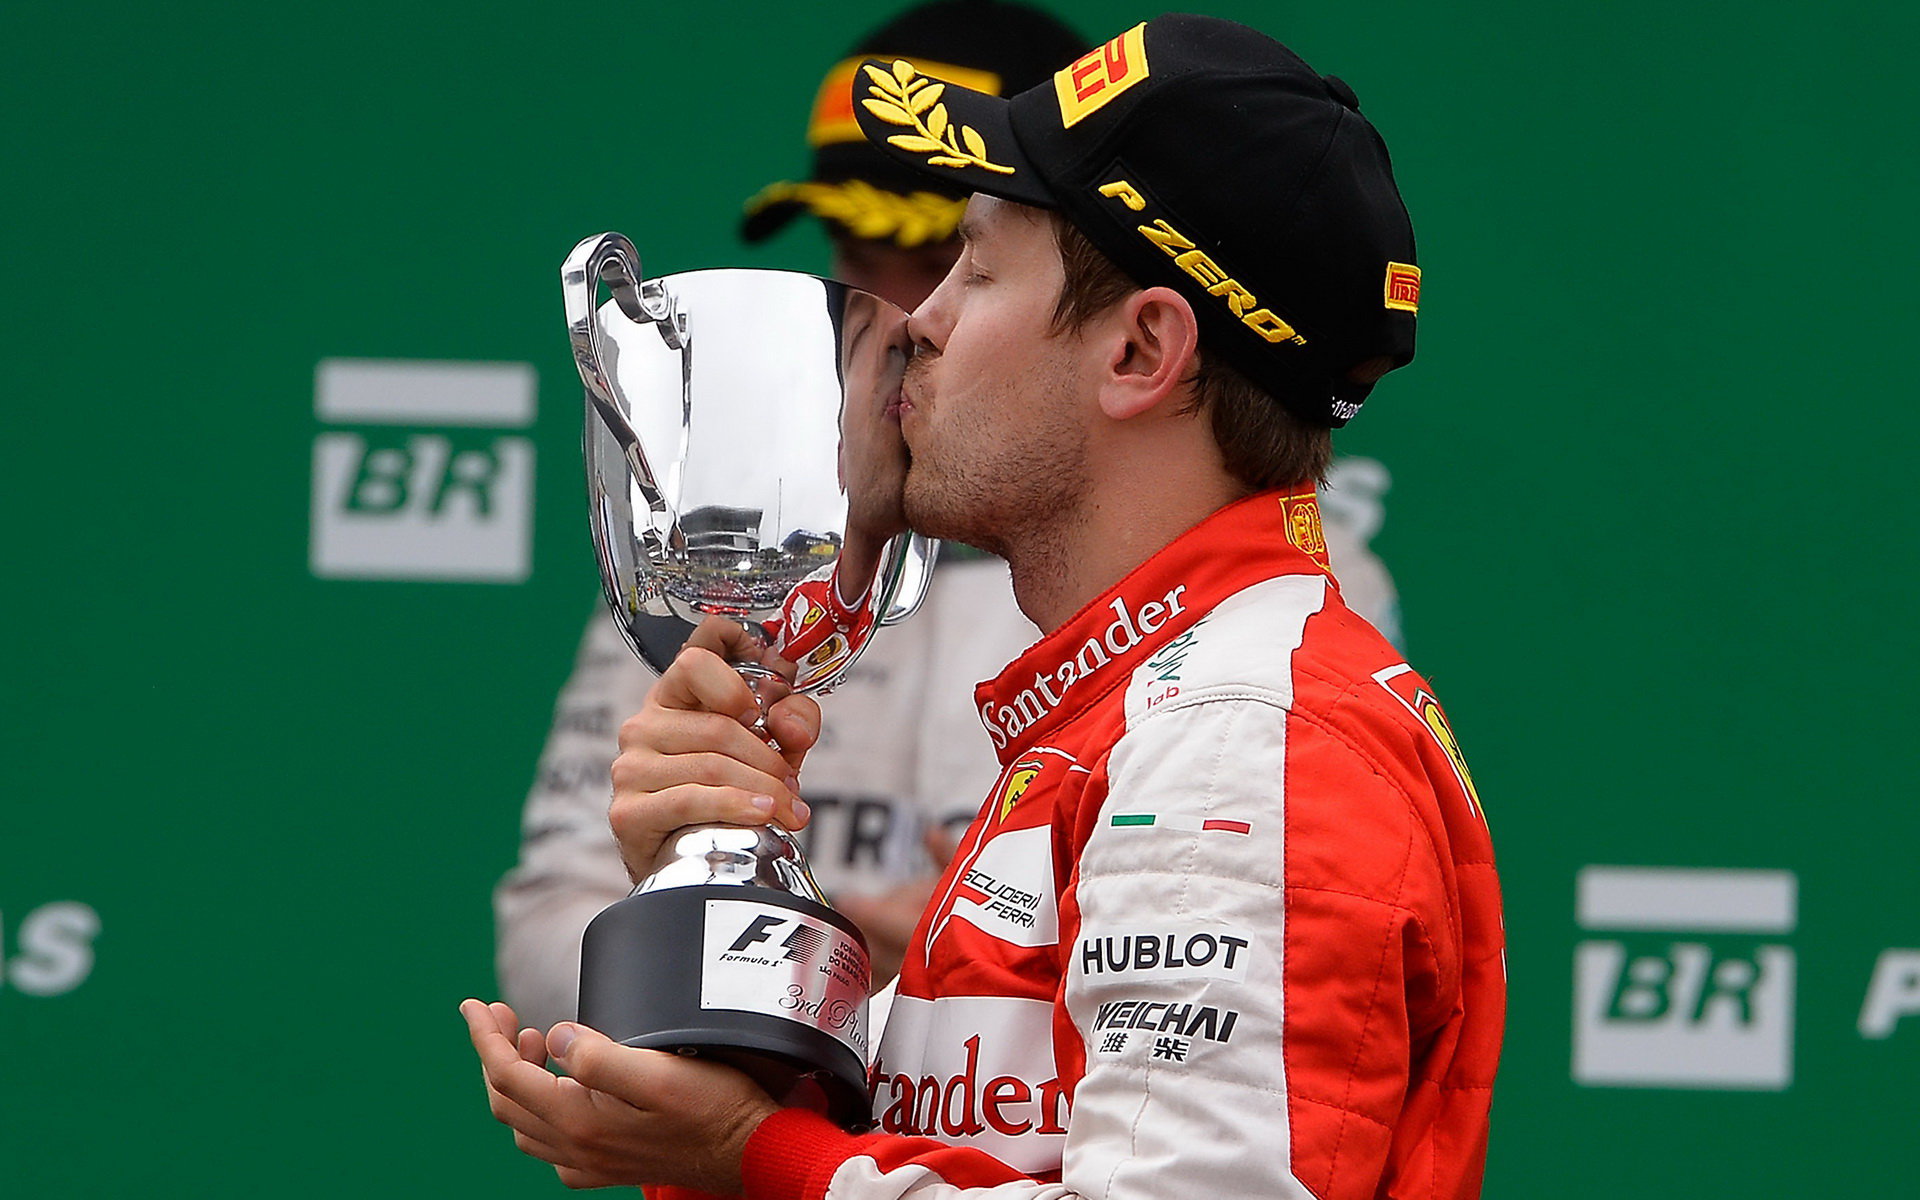 Sebastian Vettel se svou trofejí za třetí místo v Brazílii